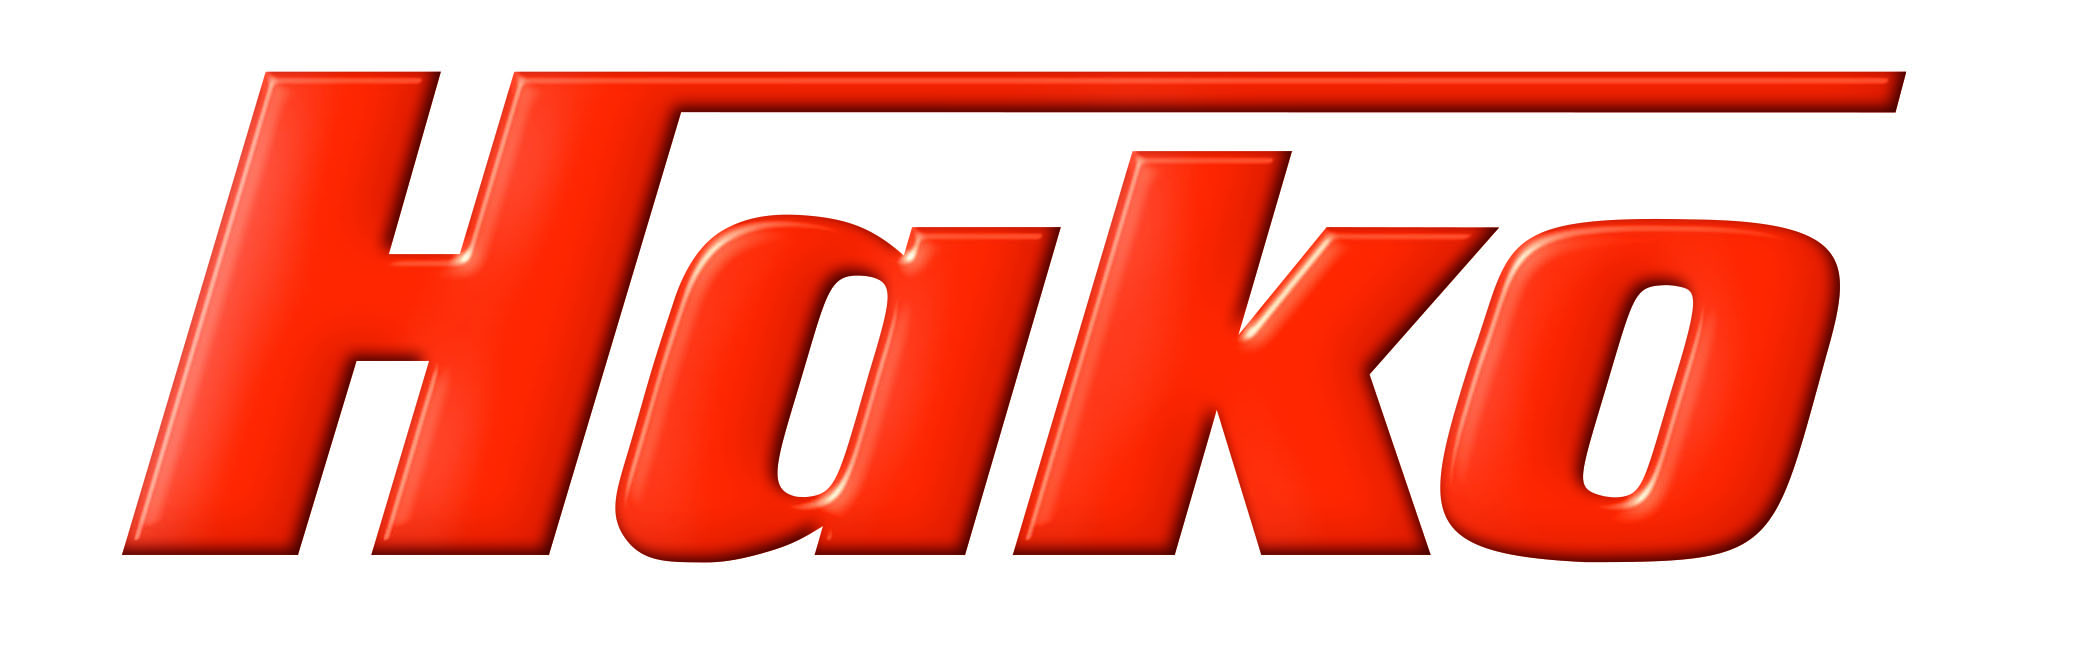 Logo Hako 2021.jpg